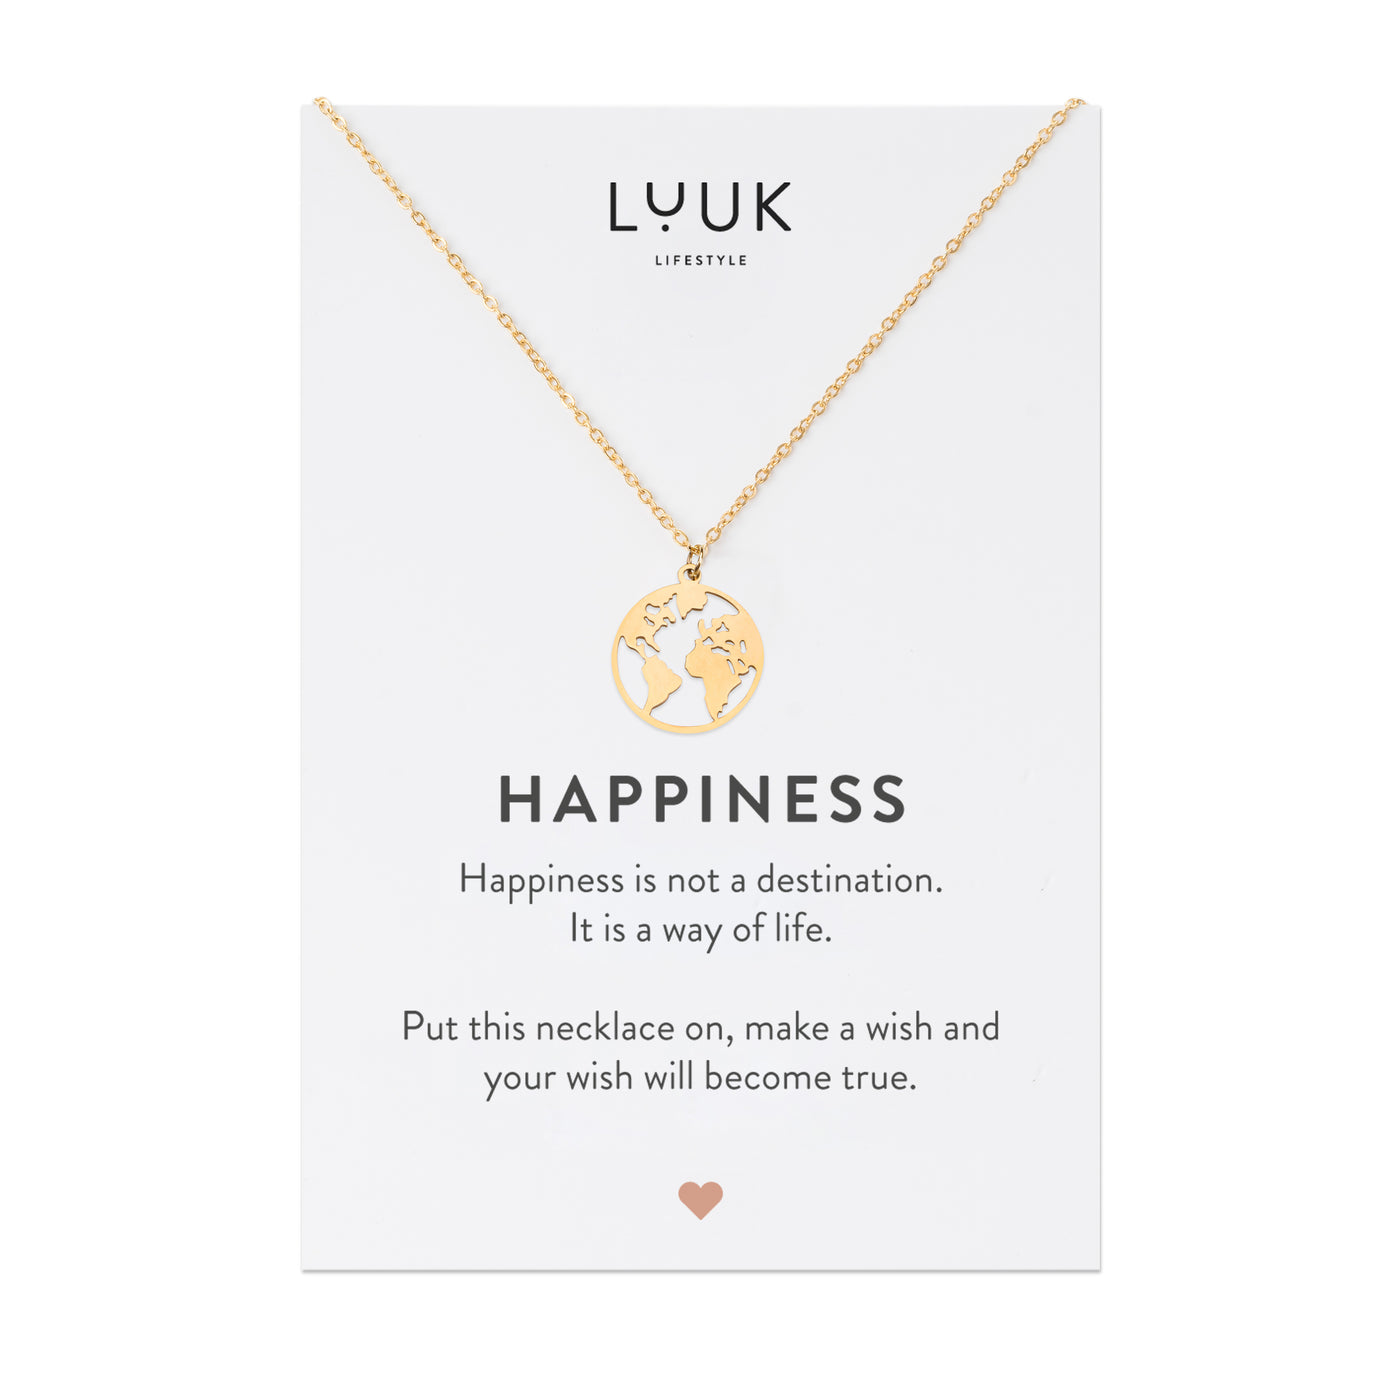 Gold Kette mit Weltkarten Anhänger aus Edelstahl in Silber auf Happiness Spruchkarte von der Marke Luuk Lifestyle